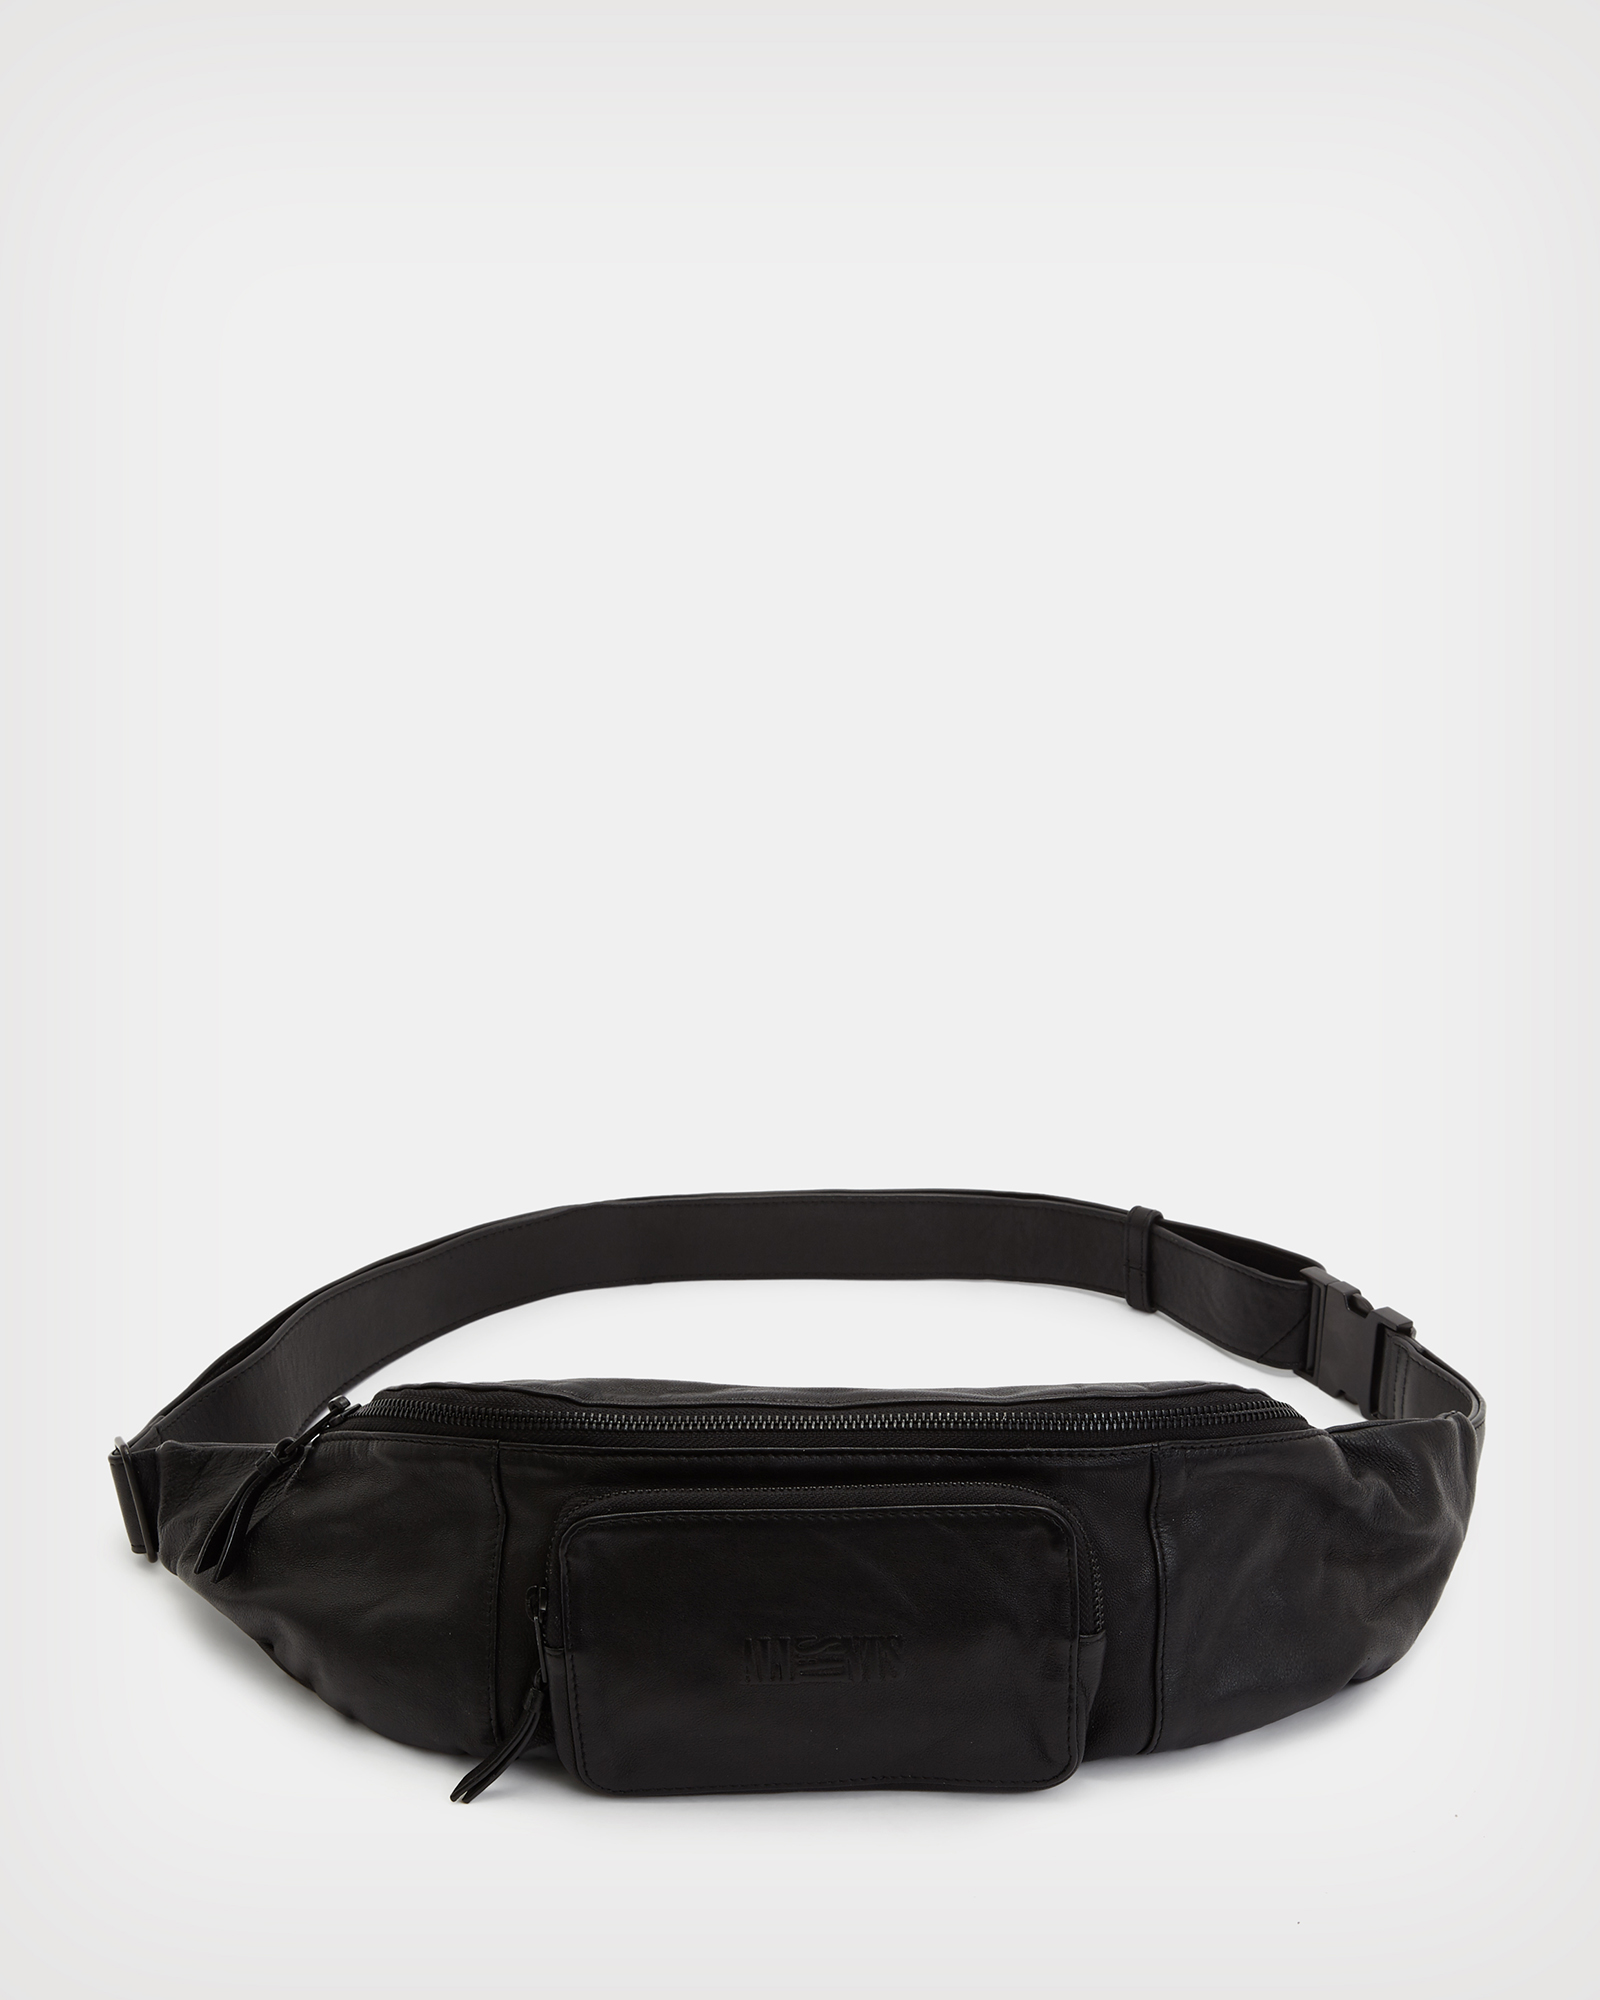 Off-White Men's Web-Strap Belt Bag/Fanny Pack